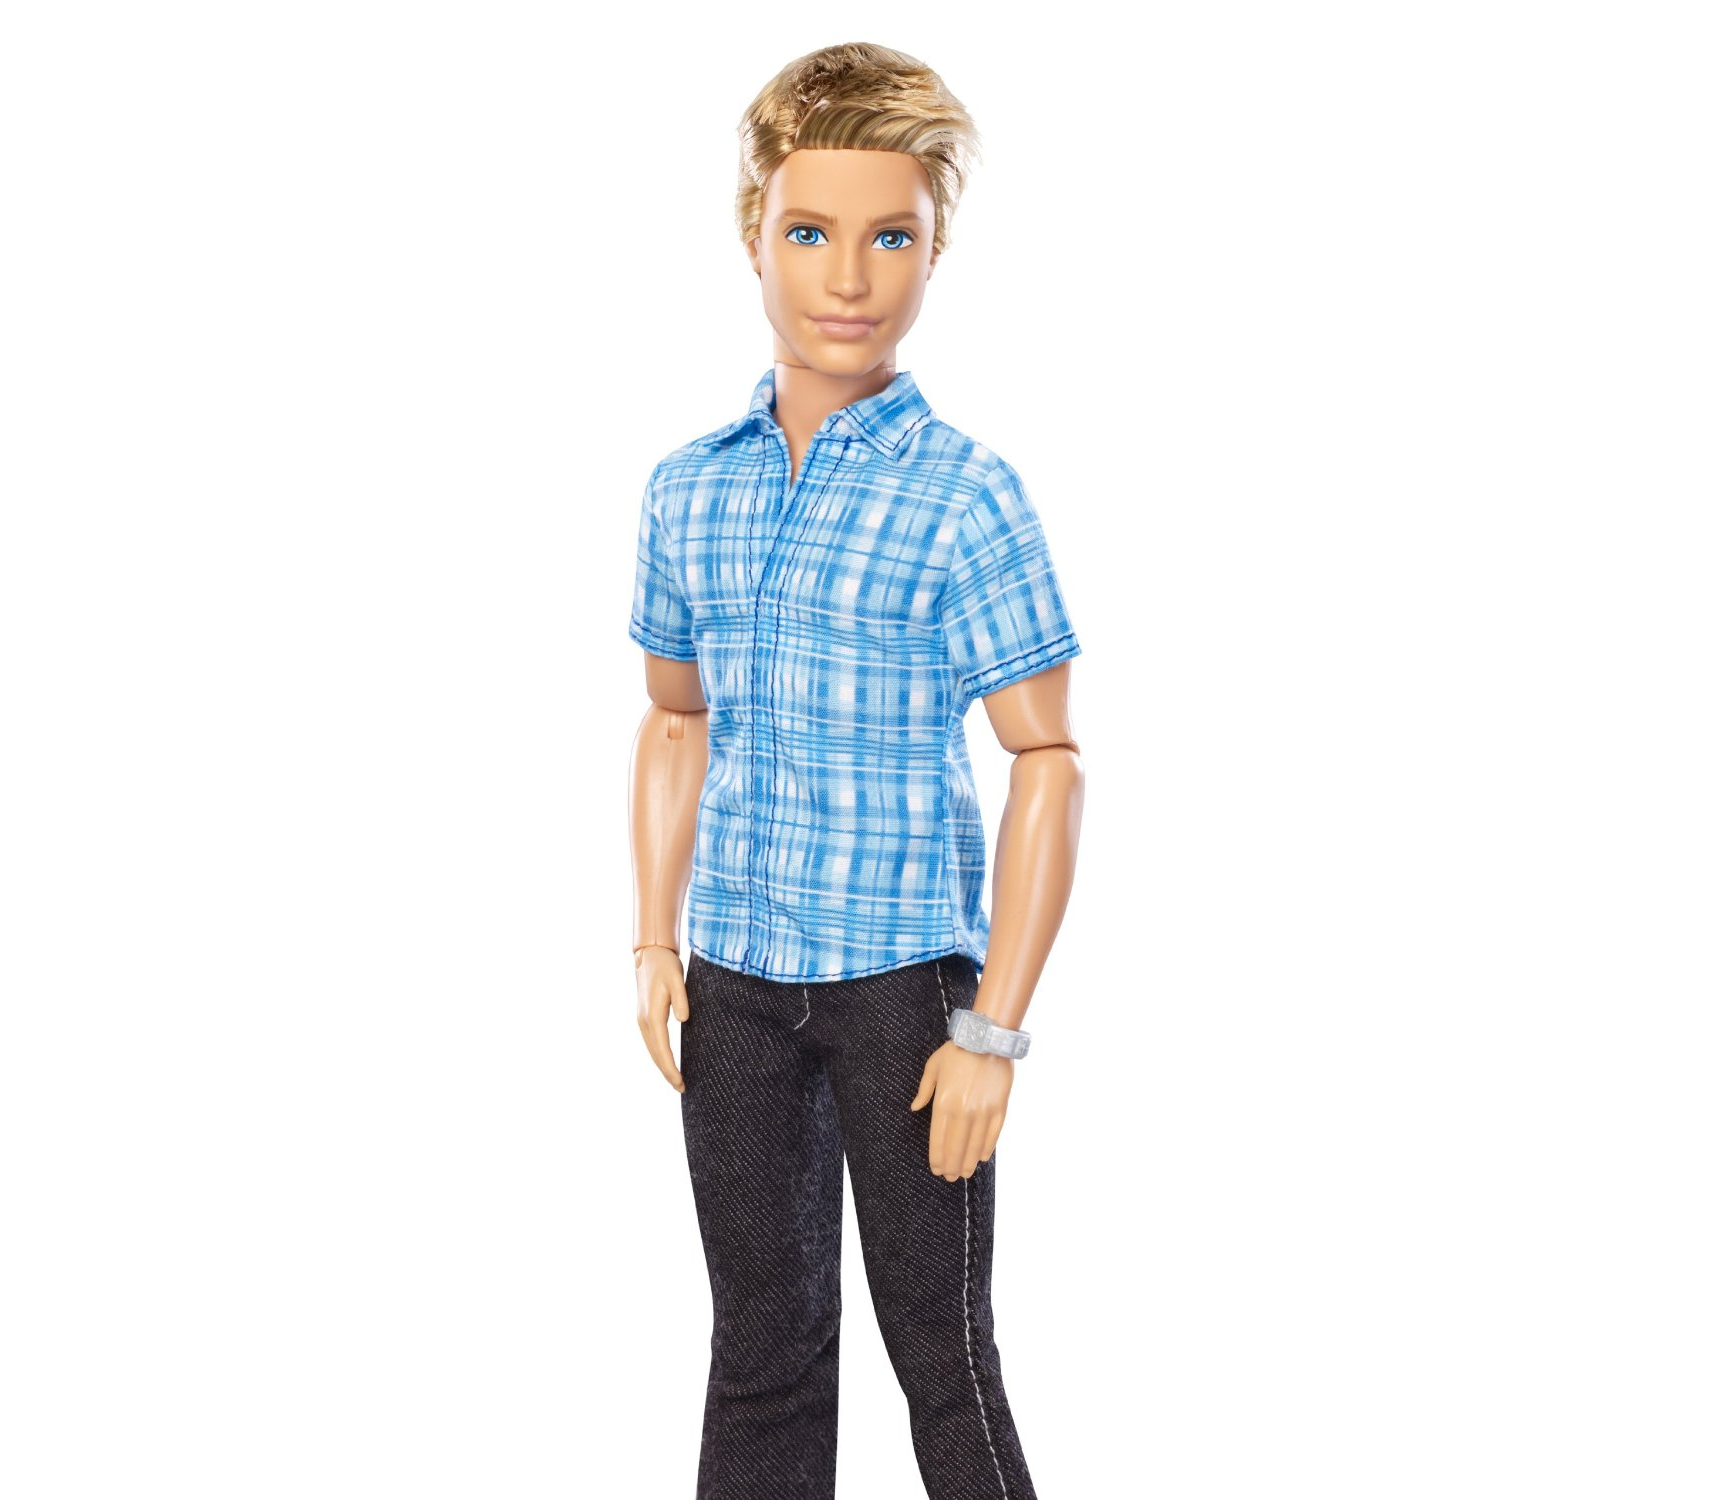 Куклы Барби и Кен. Куклы Барби Кен 🤴 на валберис. Кен в полный рост. Barbie кукла Кен.